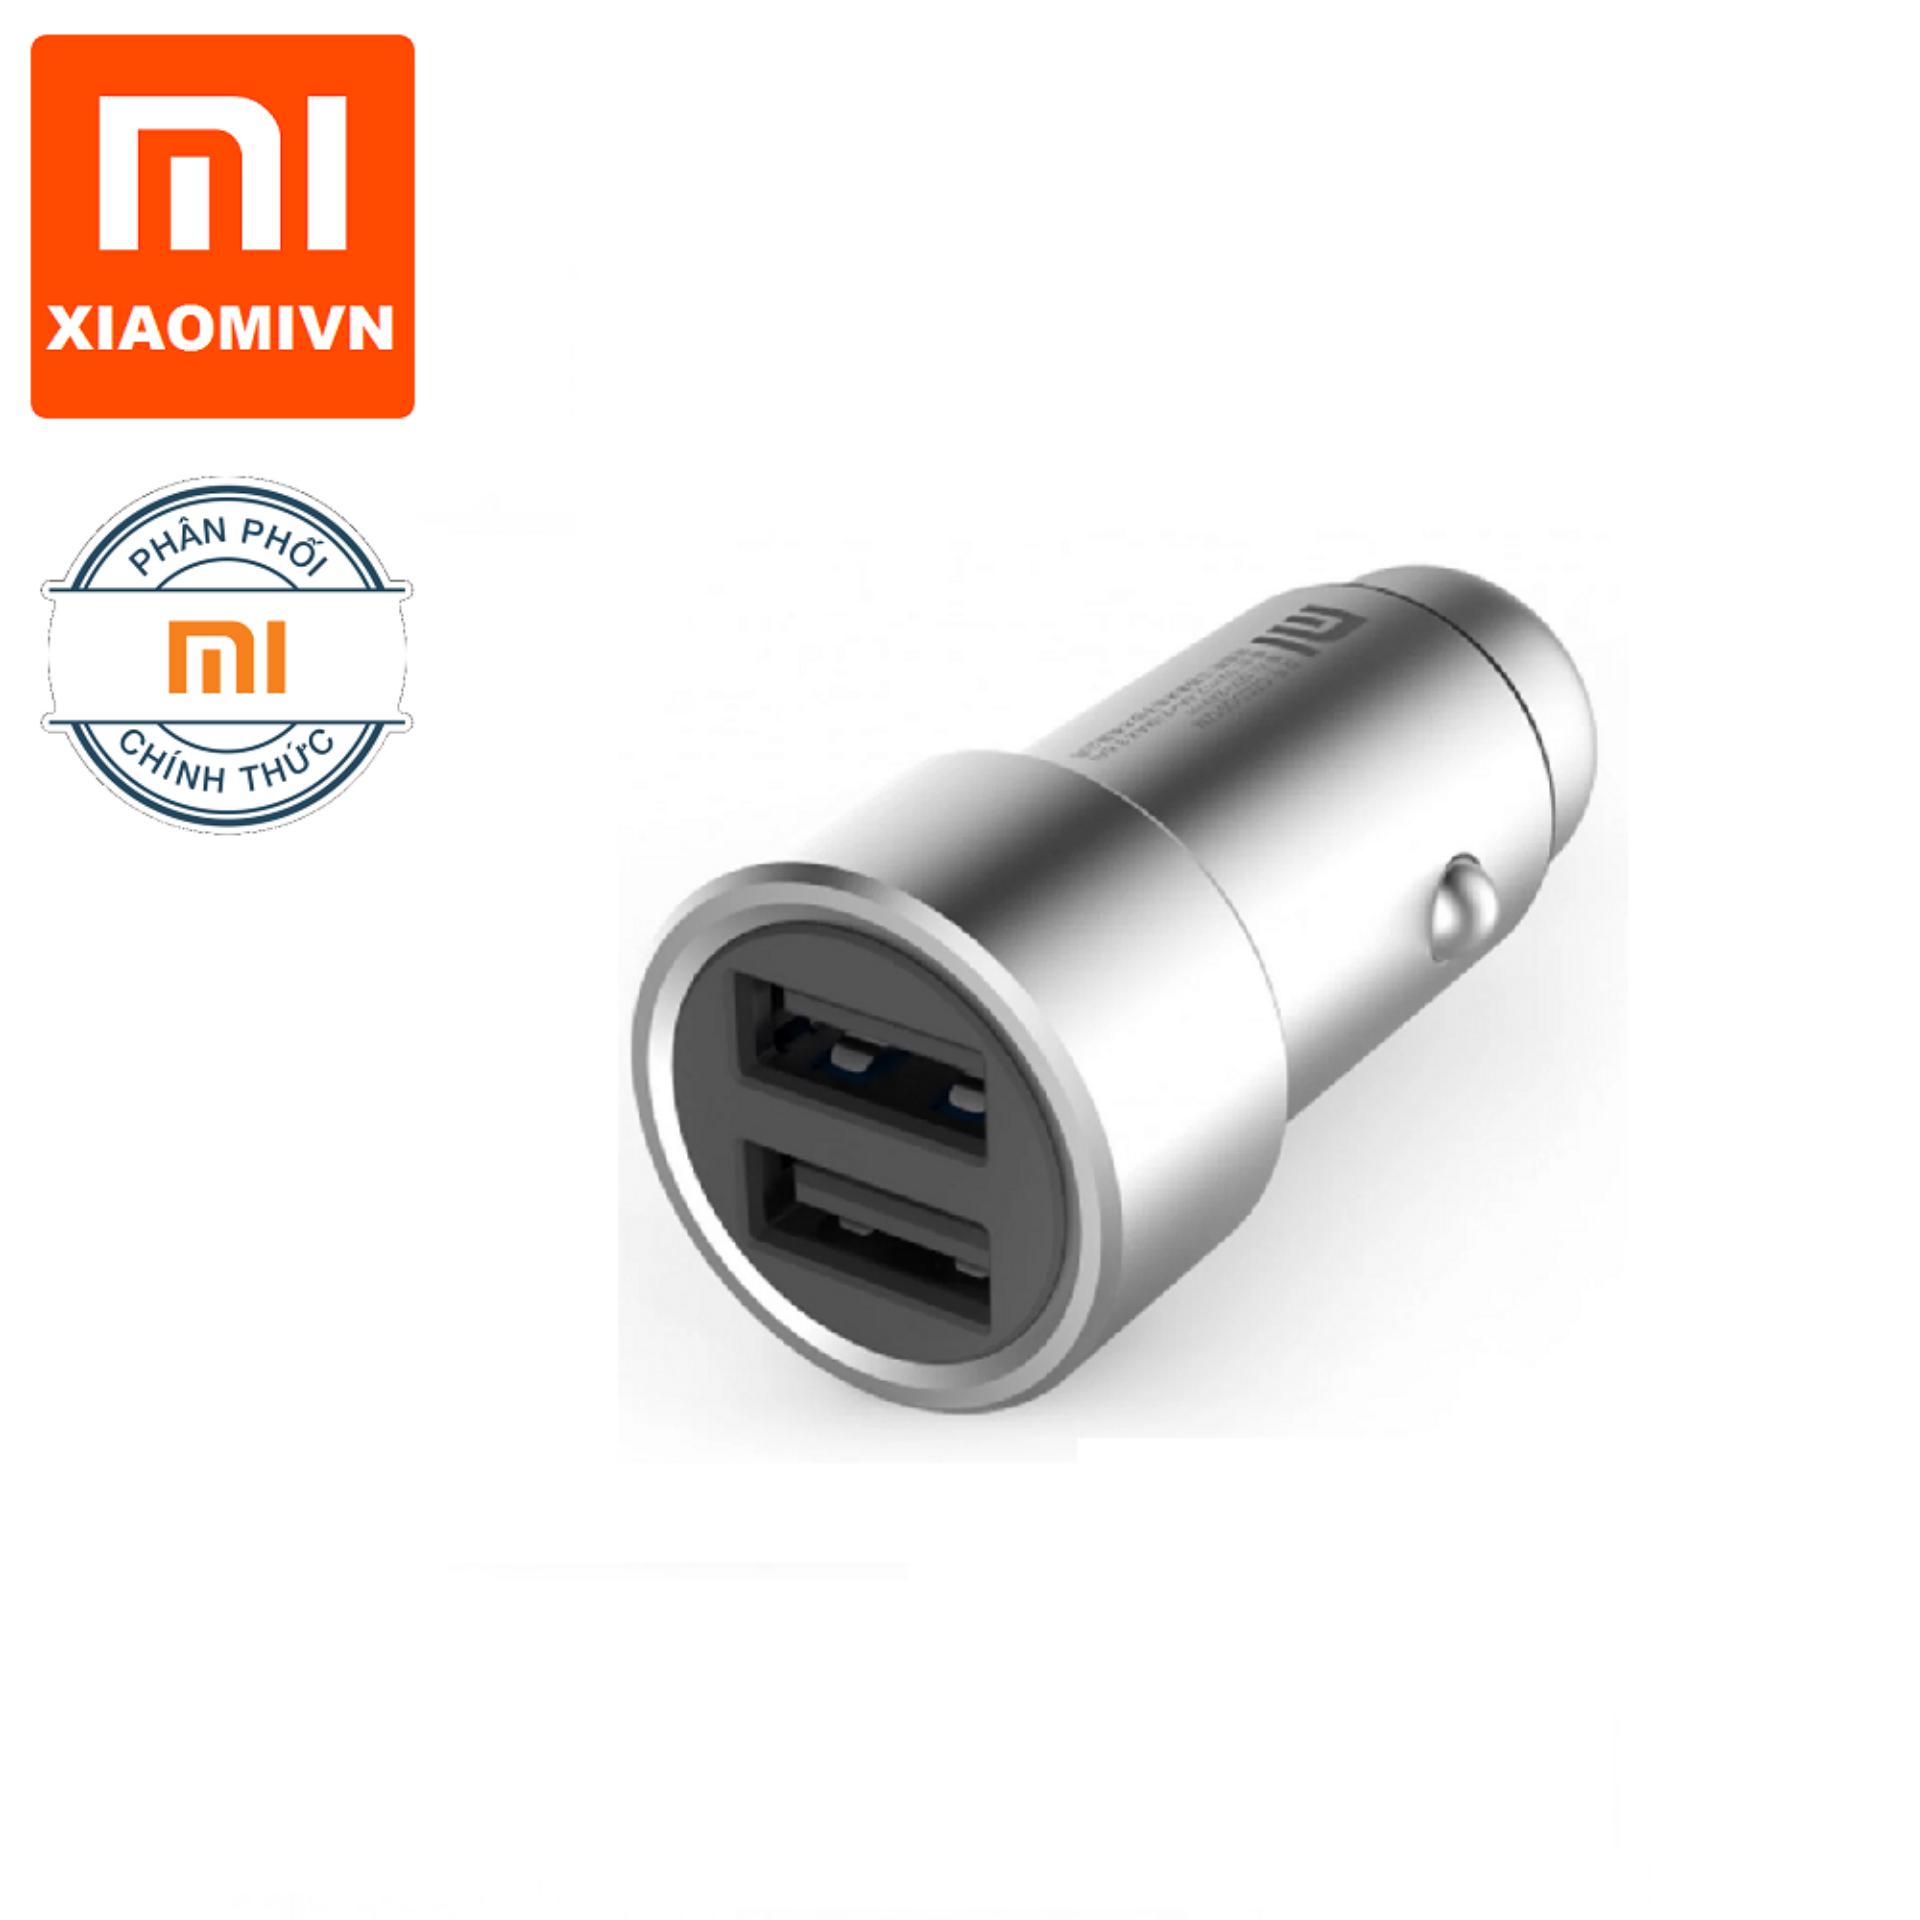 Sạc ô tô xe hơi Xiaomi 2 ngõ usb Mi car charger ( Hãng phấn phối chính thức)